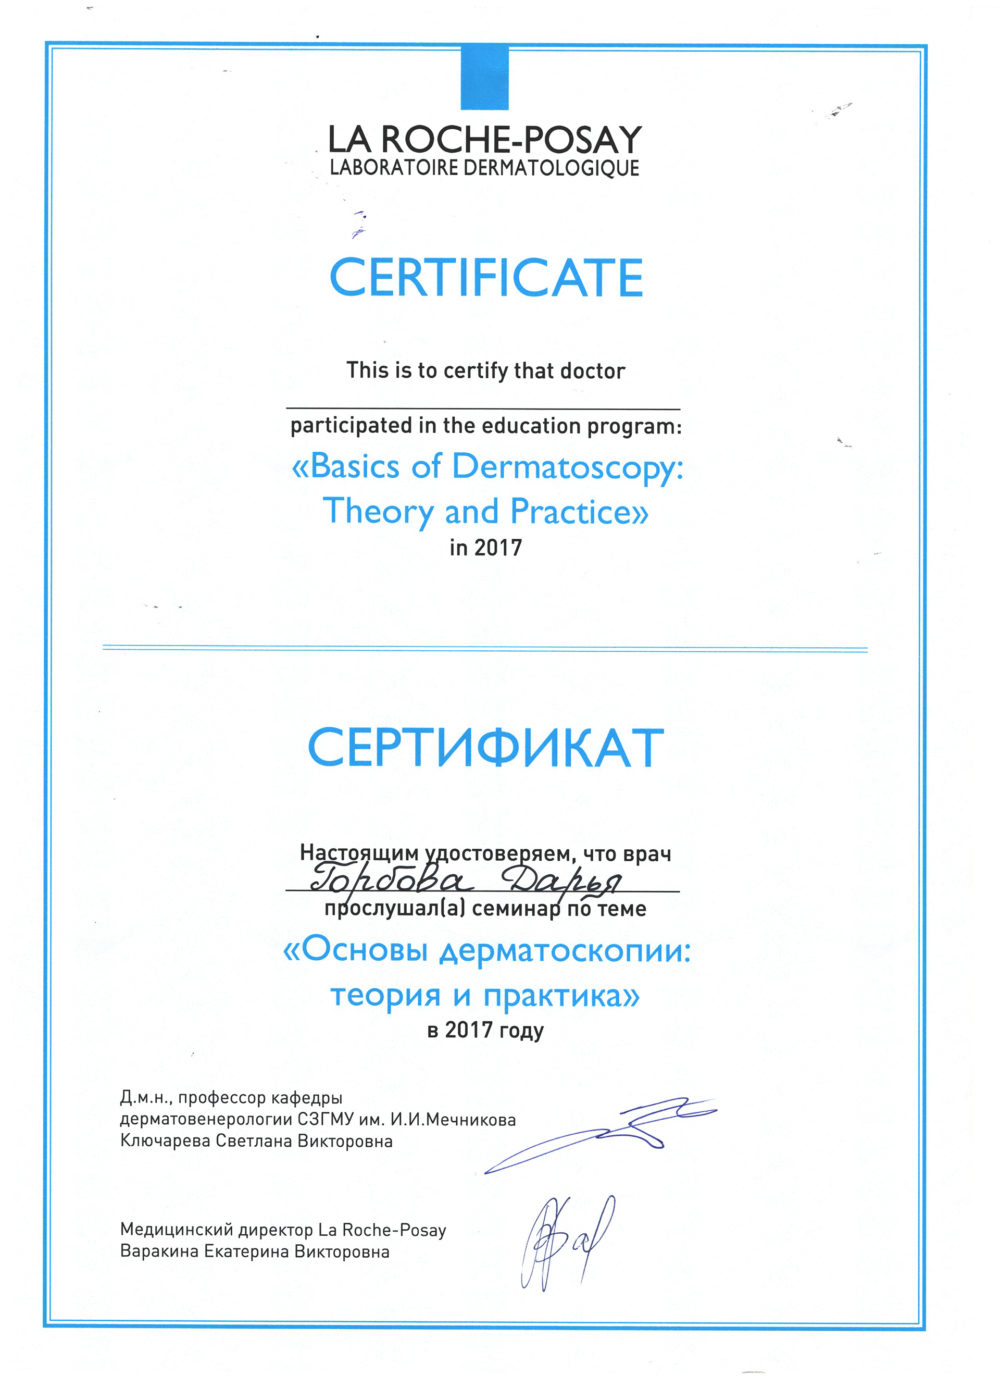 Сертификат Горбава